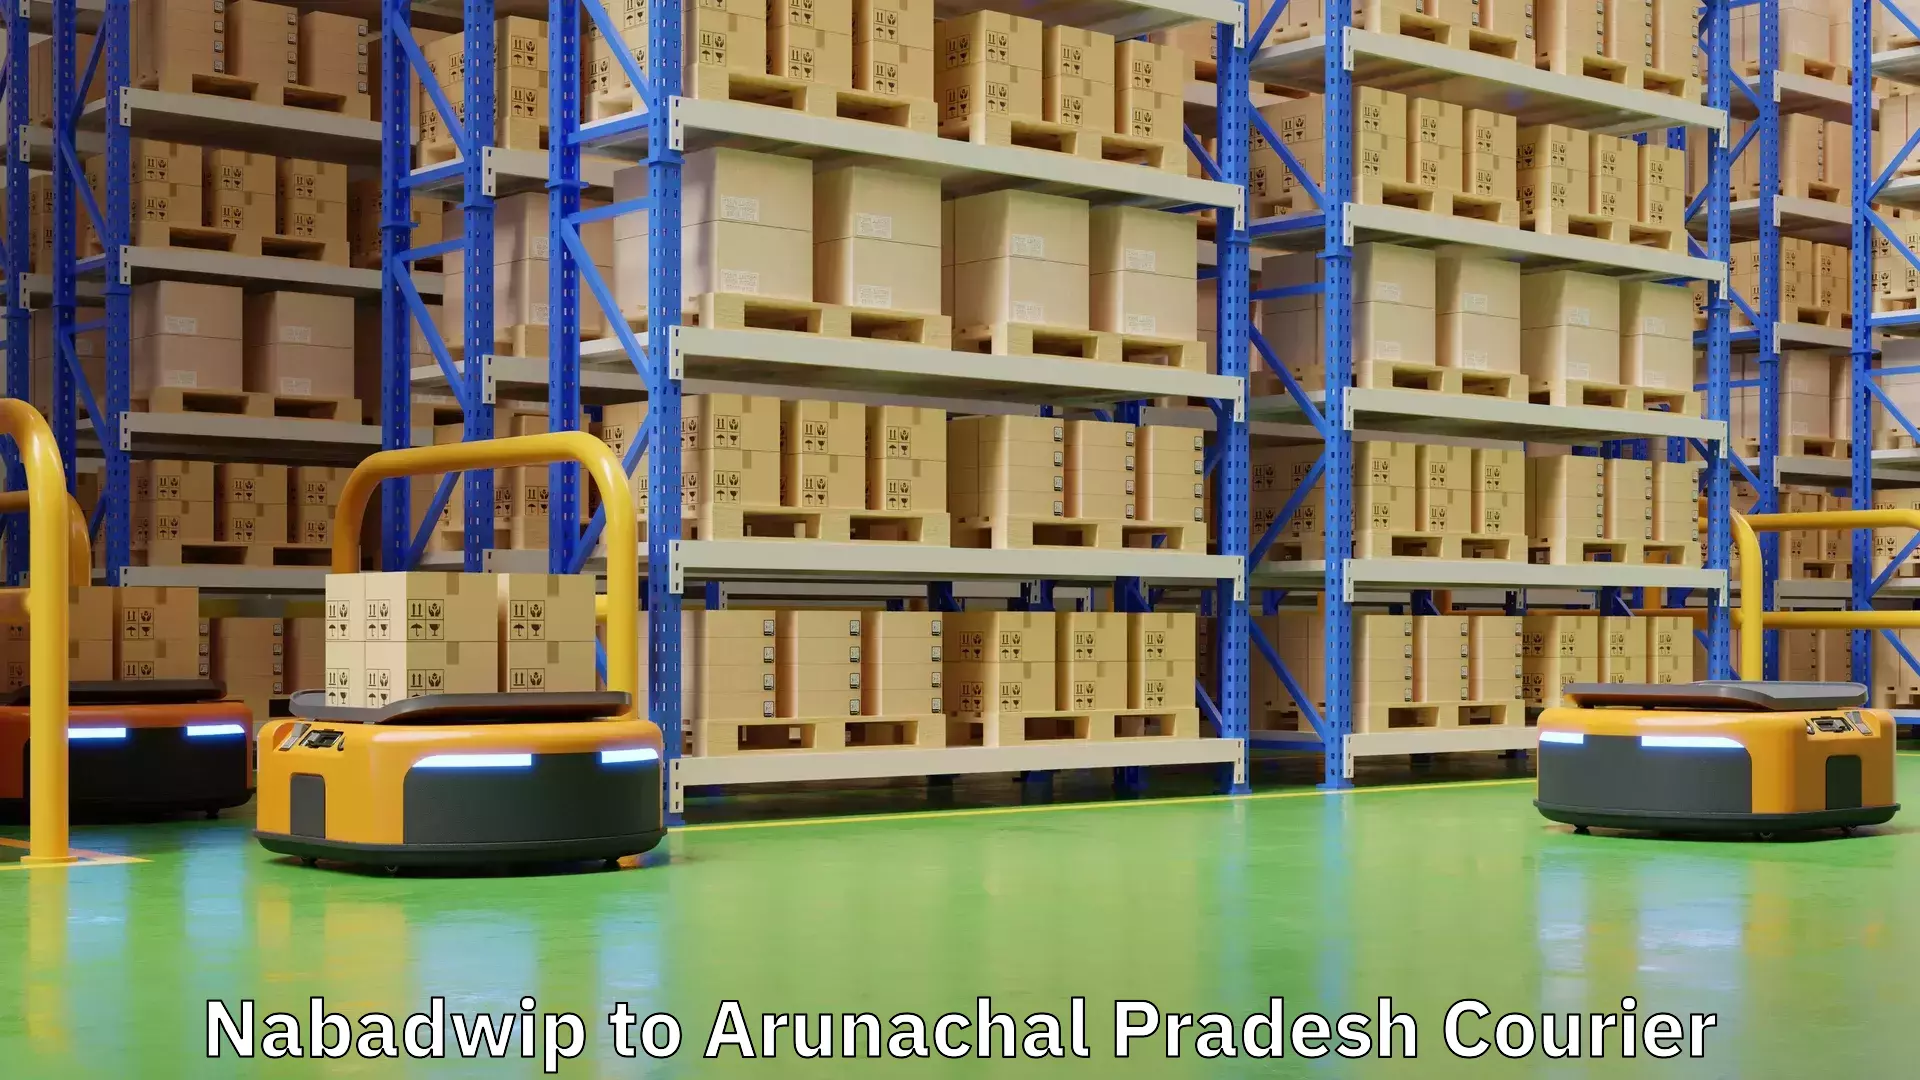 Nationwide shipping capabilities Nabadwip to Arunachal Pradesh